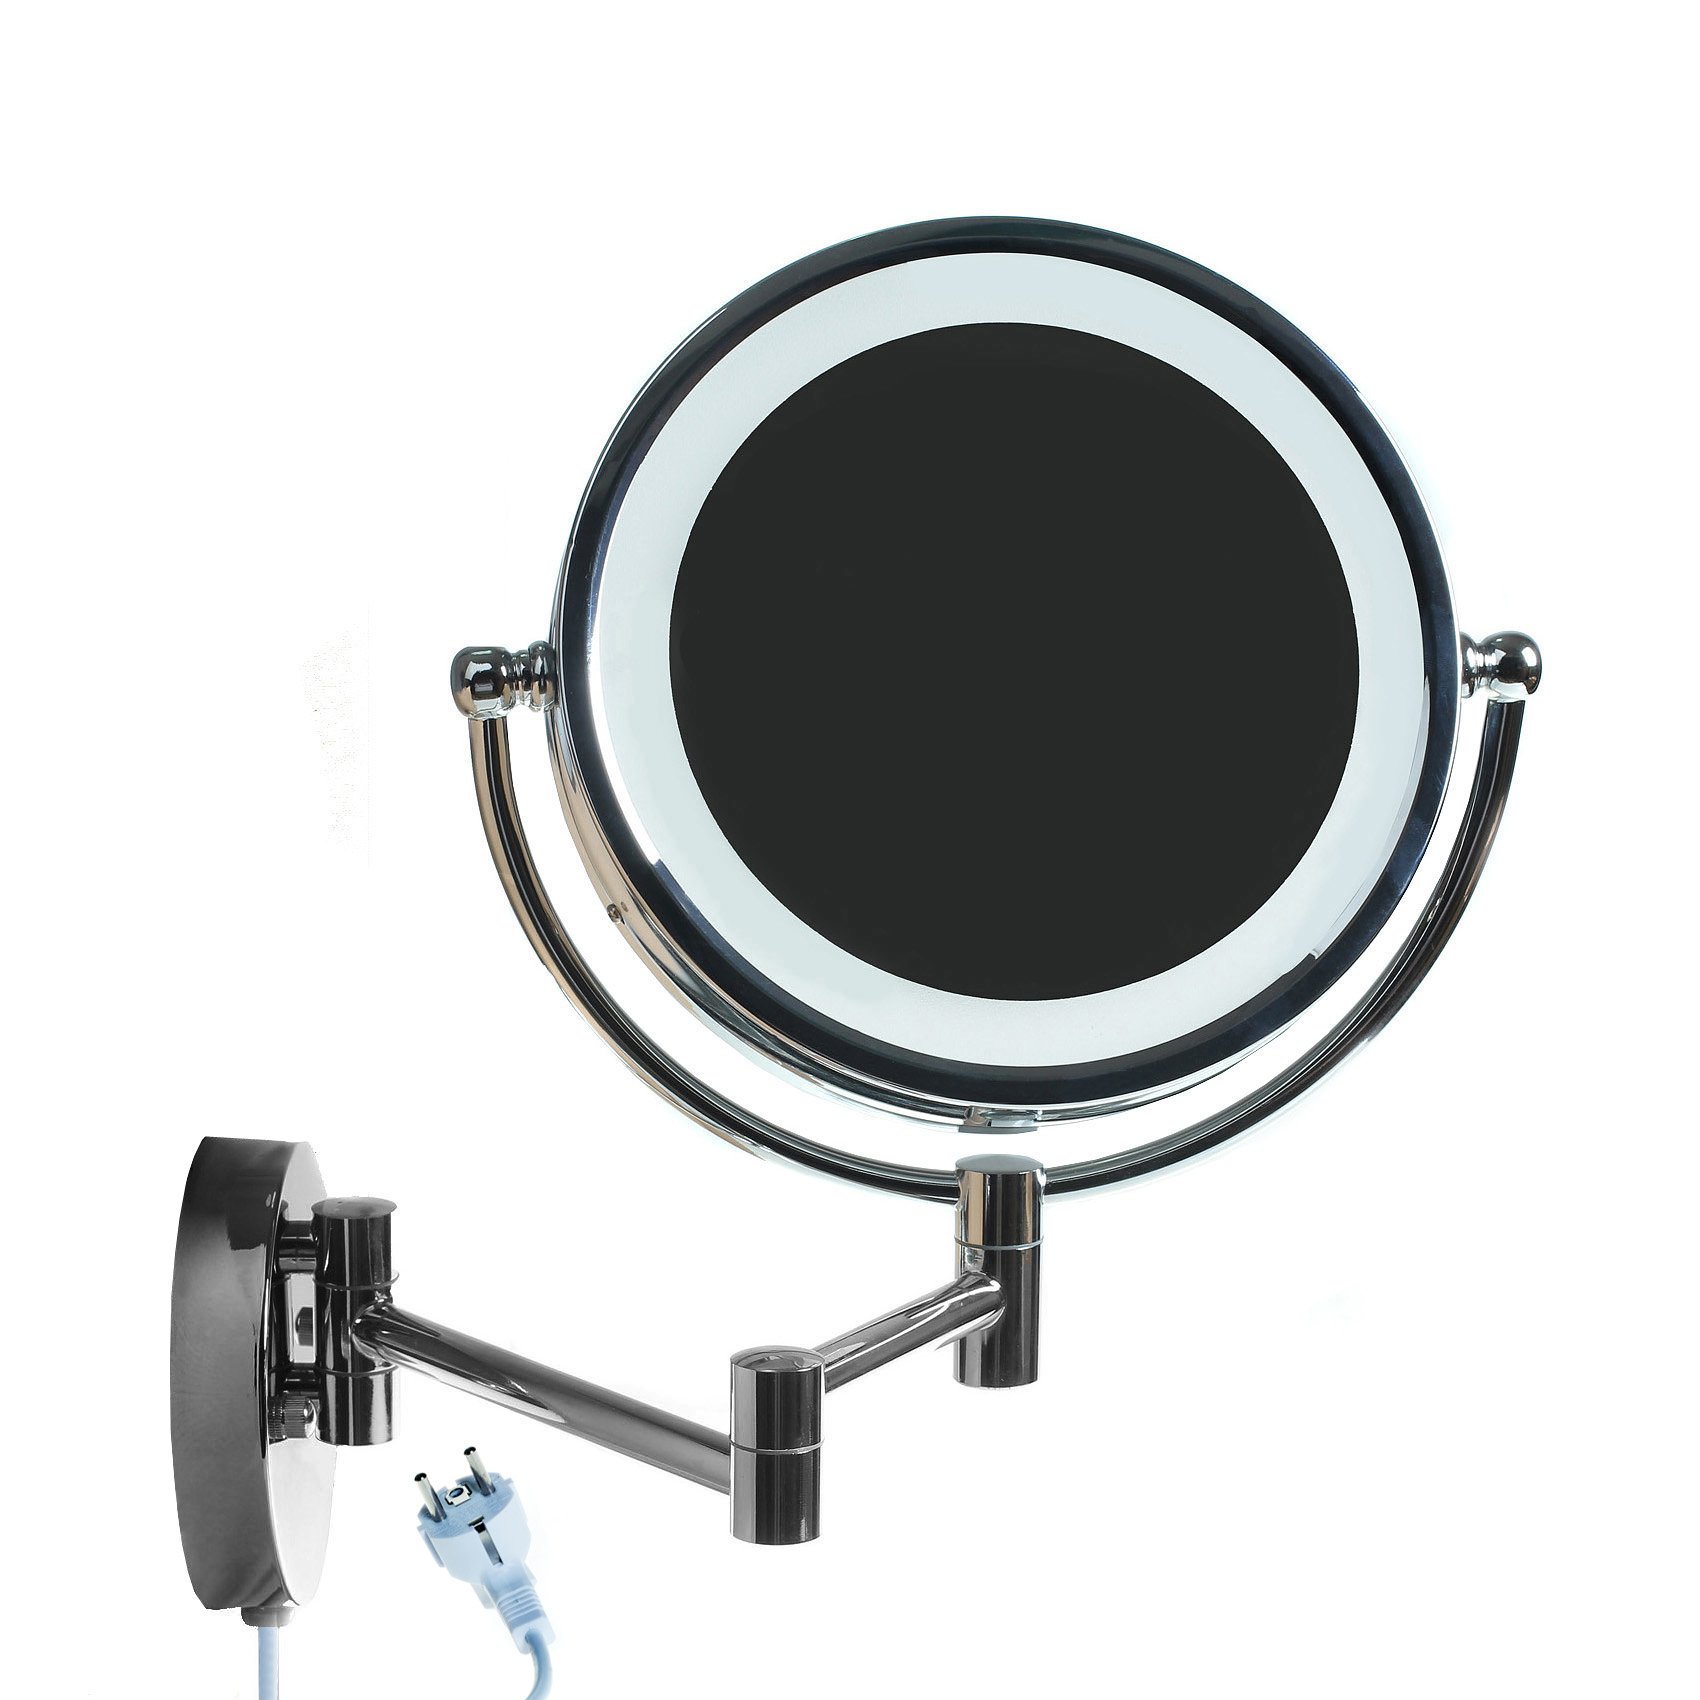 HIMRY LED Wandspiegel KosmetikSpiegel 8,5 Zoll, 7X Vergrößerung, Beleuchteter Kosmetik Spiegel, Make-up, Rasieren, Badezimmer Spiegel Faltbar Verstellbar, Verchromtes Metall, KXD3132-7x